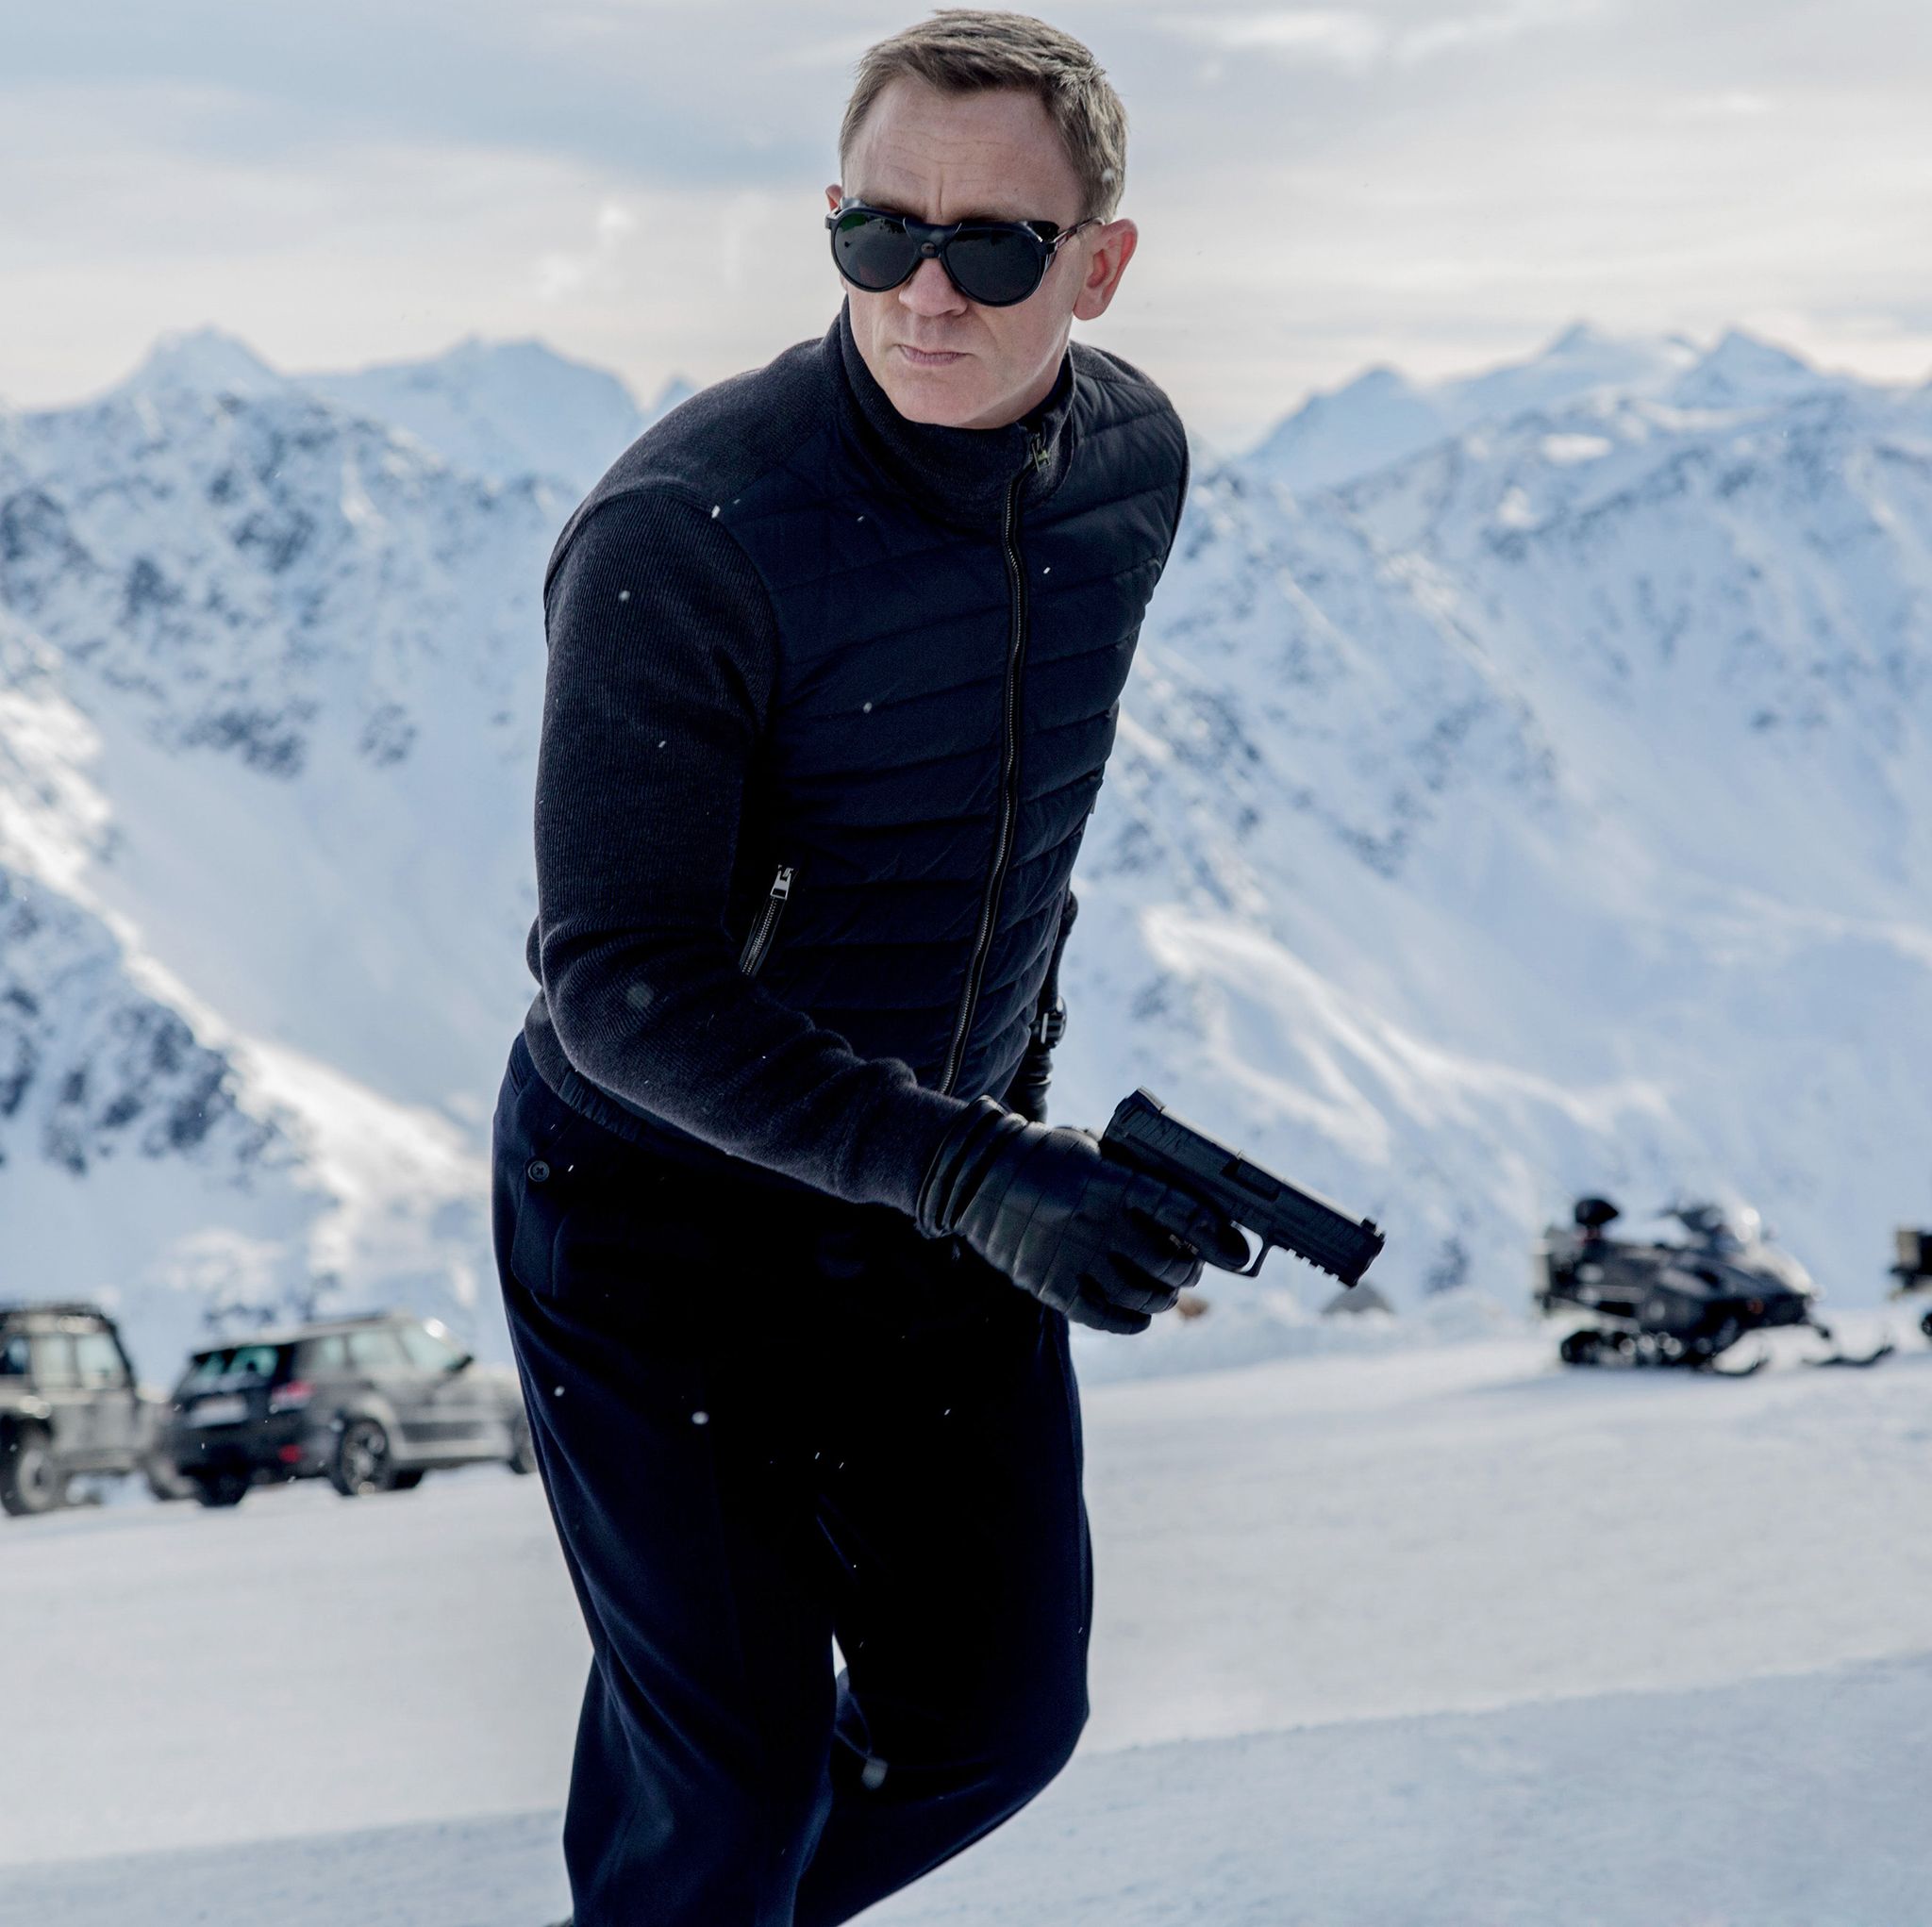 James Bond Spectre for Sky Cinema campaign